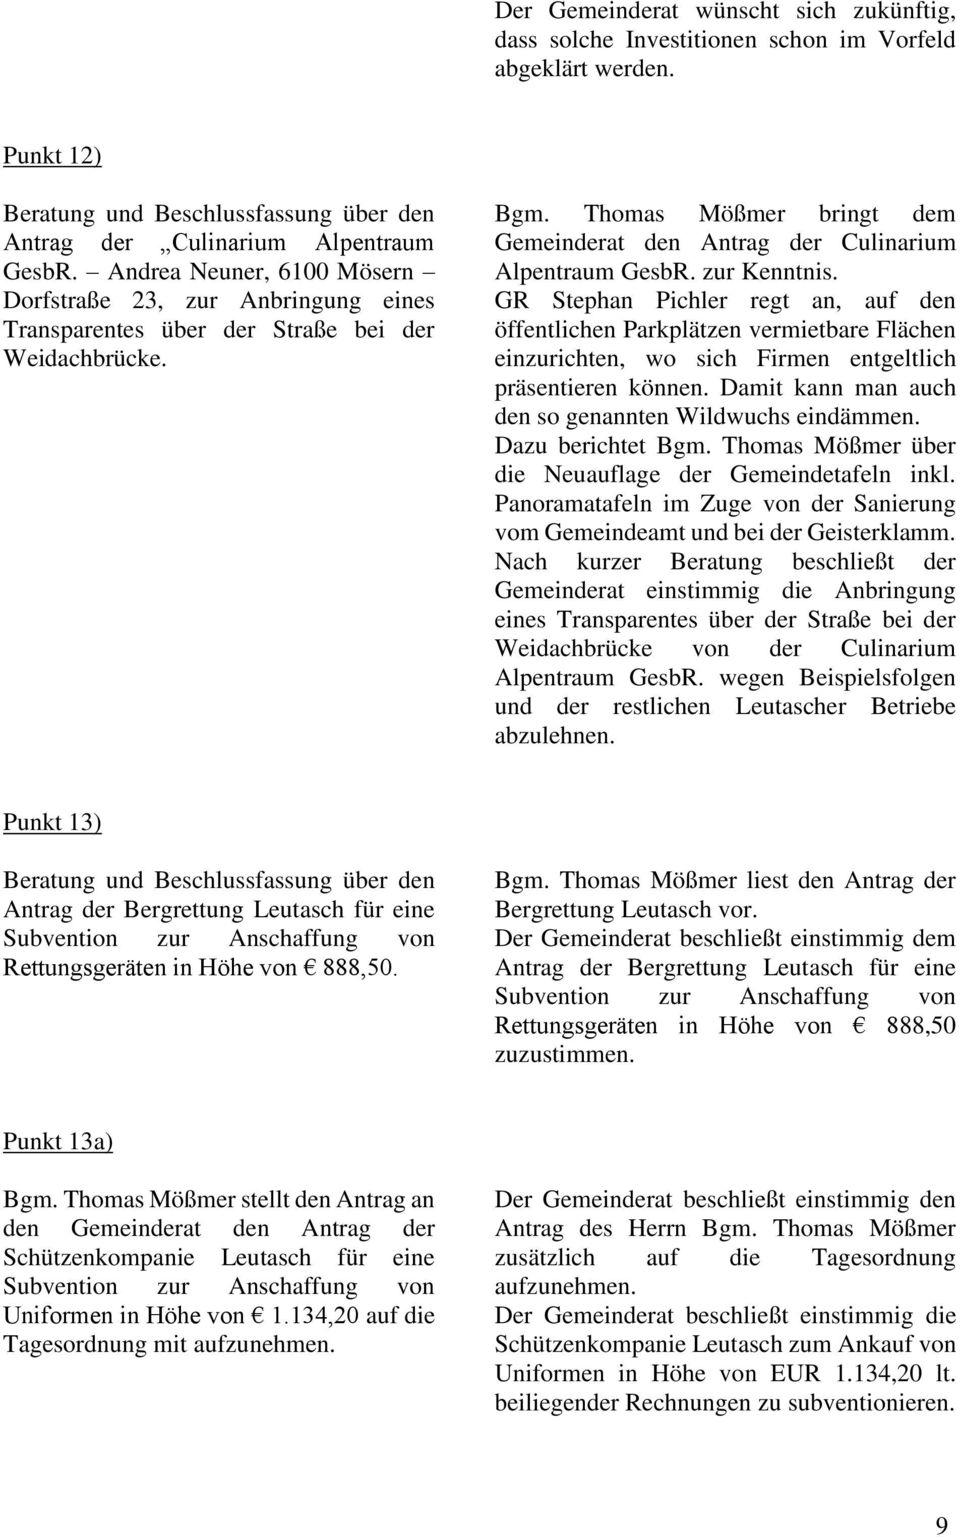 Thomas Mößmer bringt dem Gemeinderat den Antrag der Culinarium Alpentraum GesbR. zur Kenntnis.